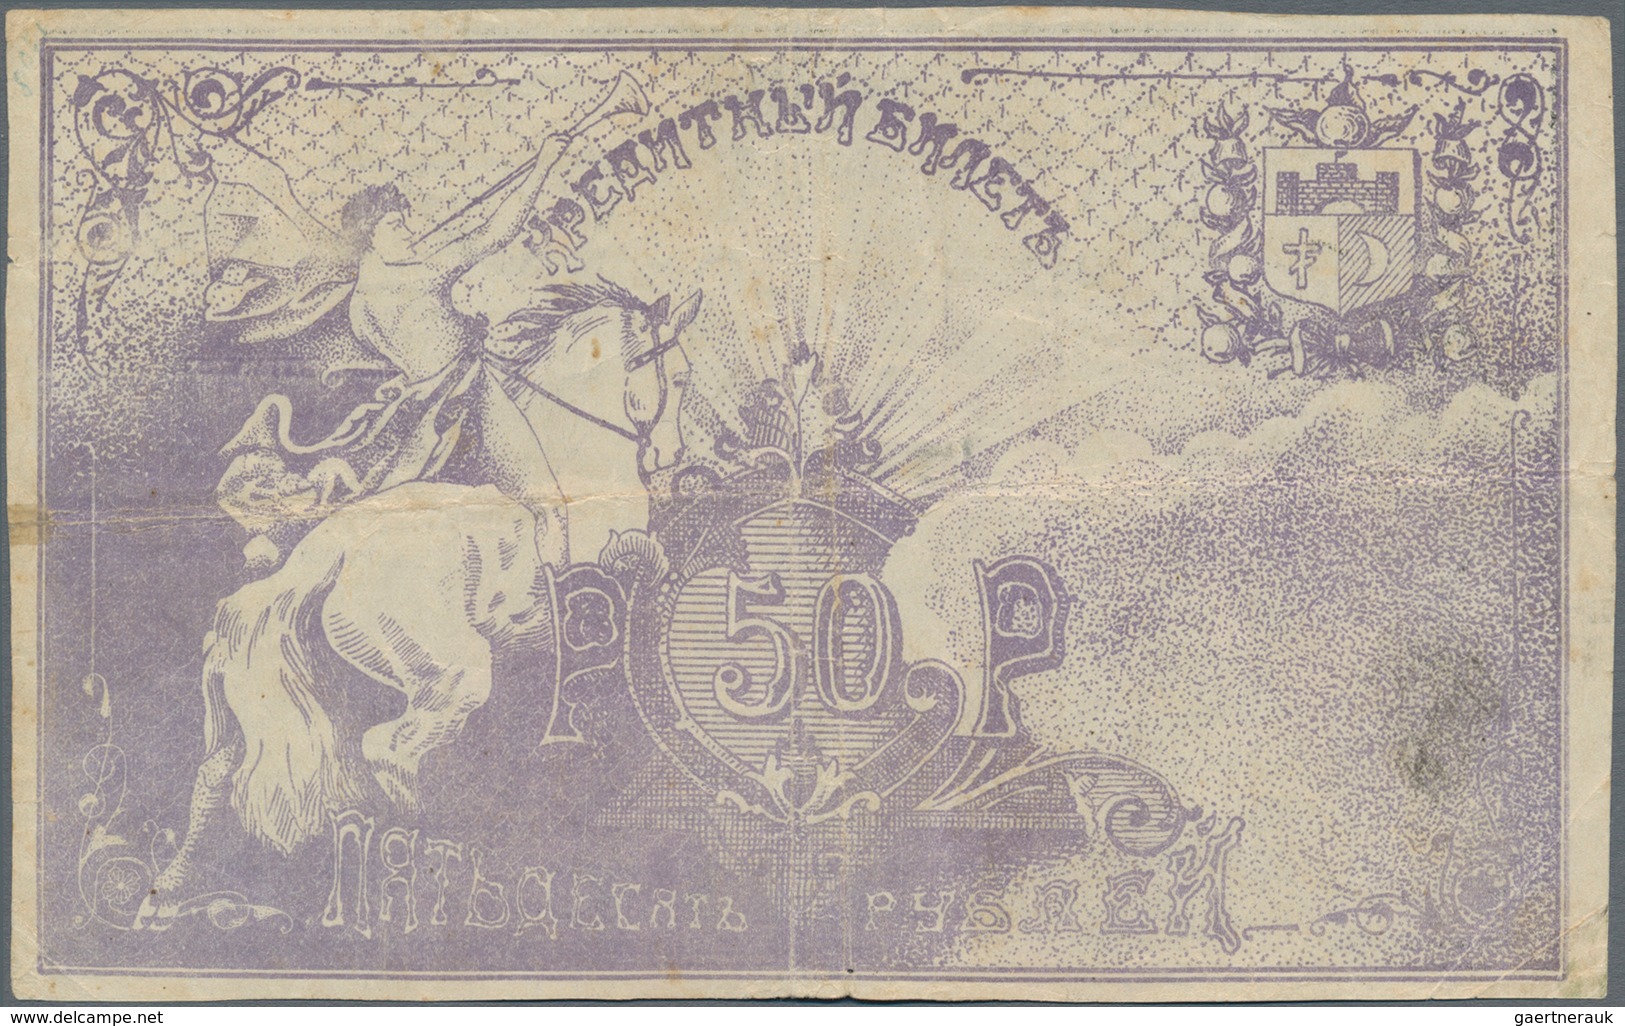 Russia / Russland: Central Asia - Semireche Region 50 Rubles 1918, P.S1123 (R. 20608, K. 8), Conditi - Russia